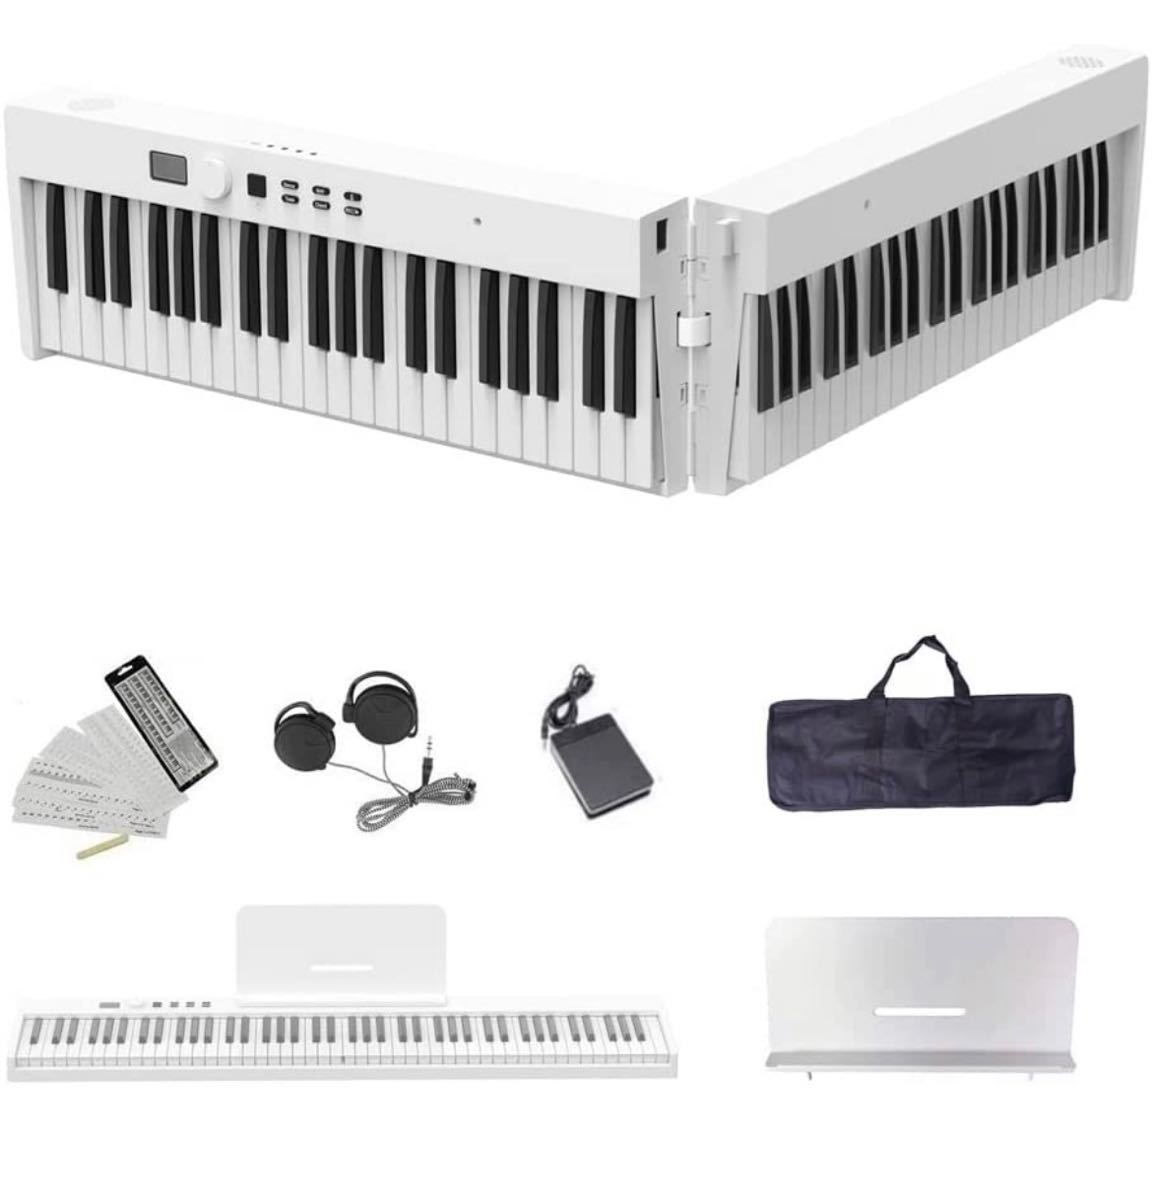 Longeye 電子ピアノ 88鍵盤 折り畳み式 高音質 充電型 生ピアノと同じ鍵盤サイズ FOLD PRO ピアノ MIDI対応 128種